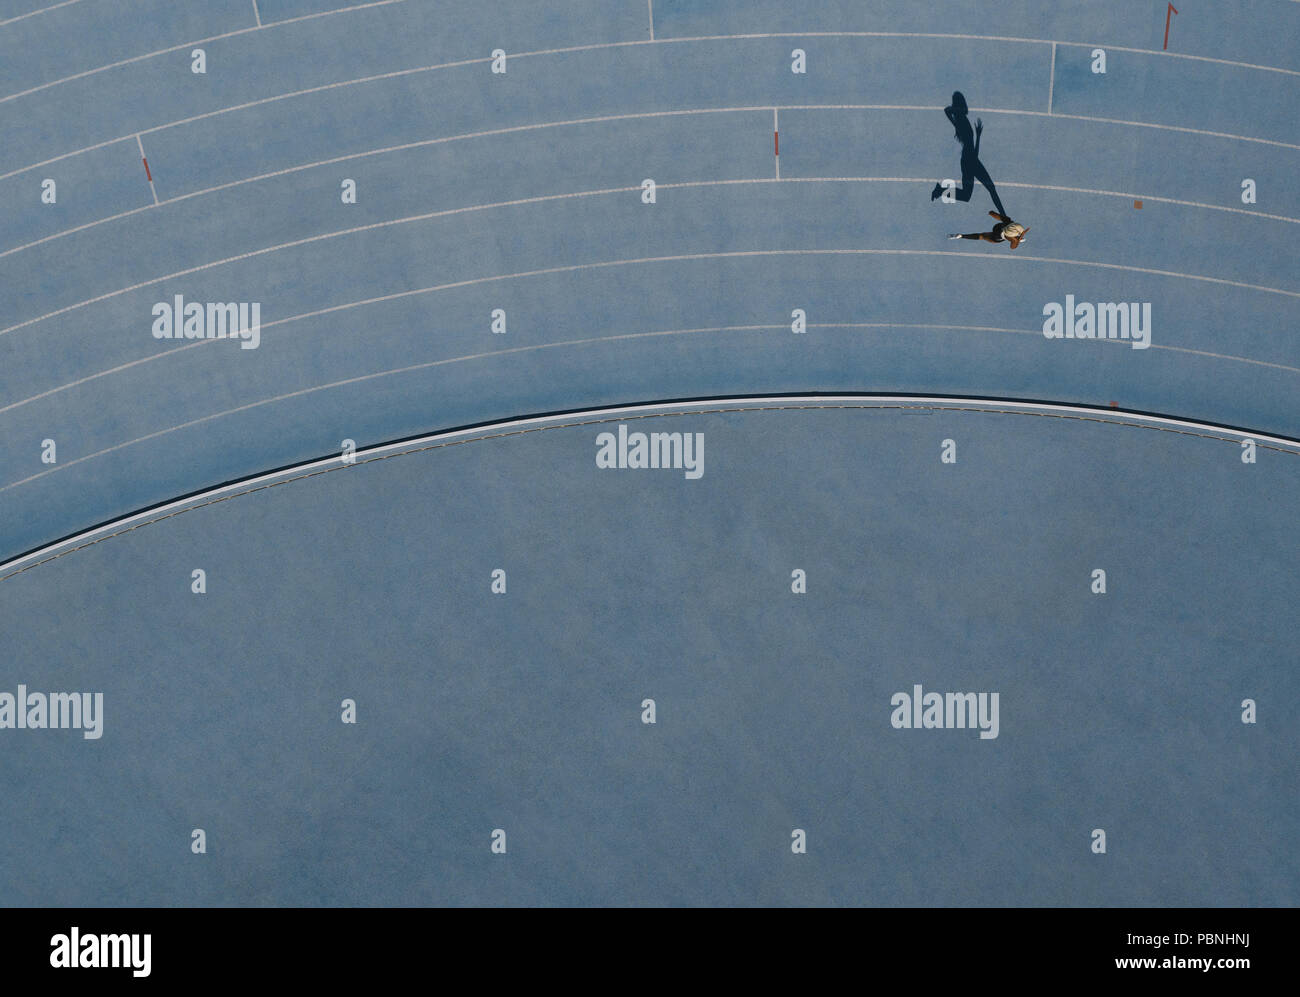 Sprinter in esecuzione sulla pista di atletica leggera. Vista dall'alto di un velocista in esecuzione su pista in uno stadio con ombra che cade sul lato. Foto Stock